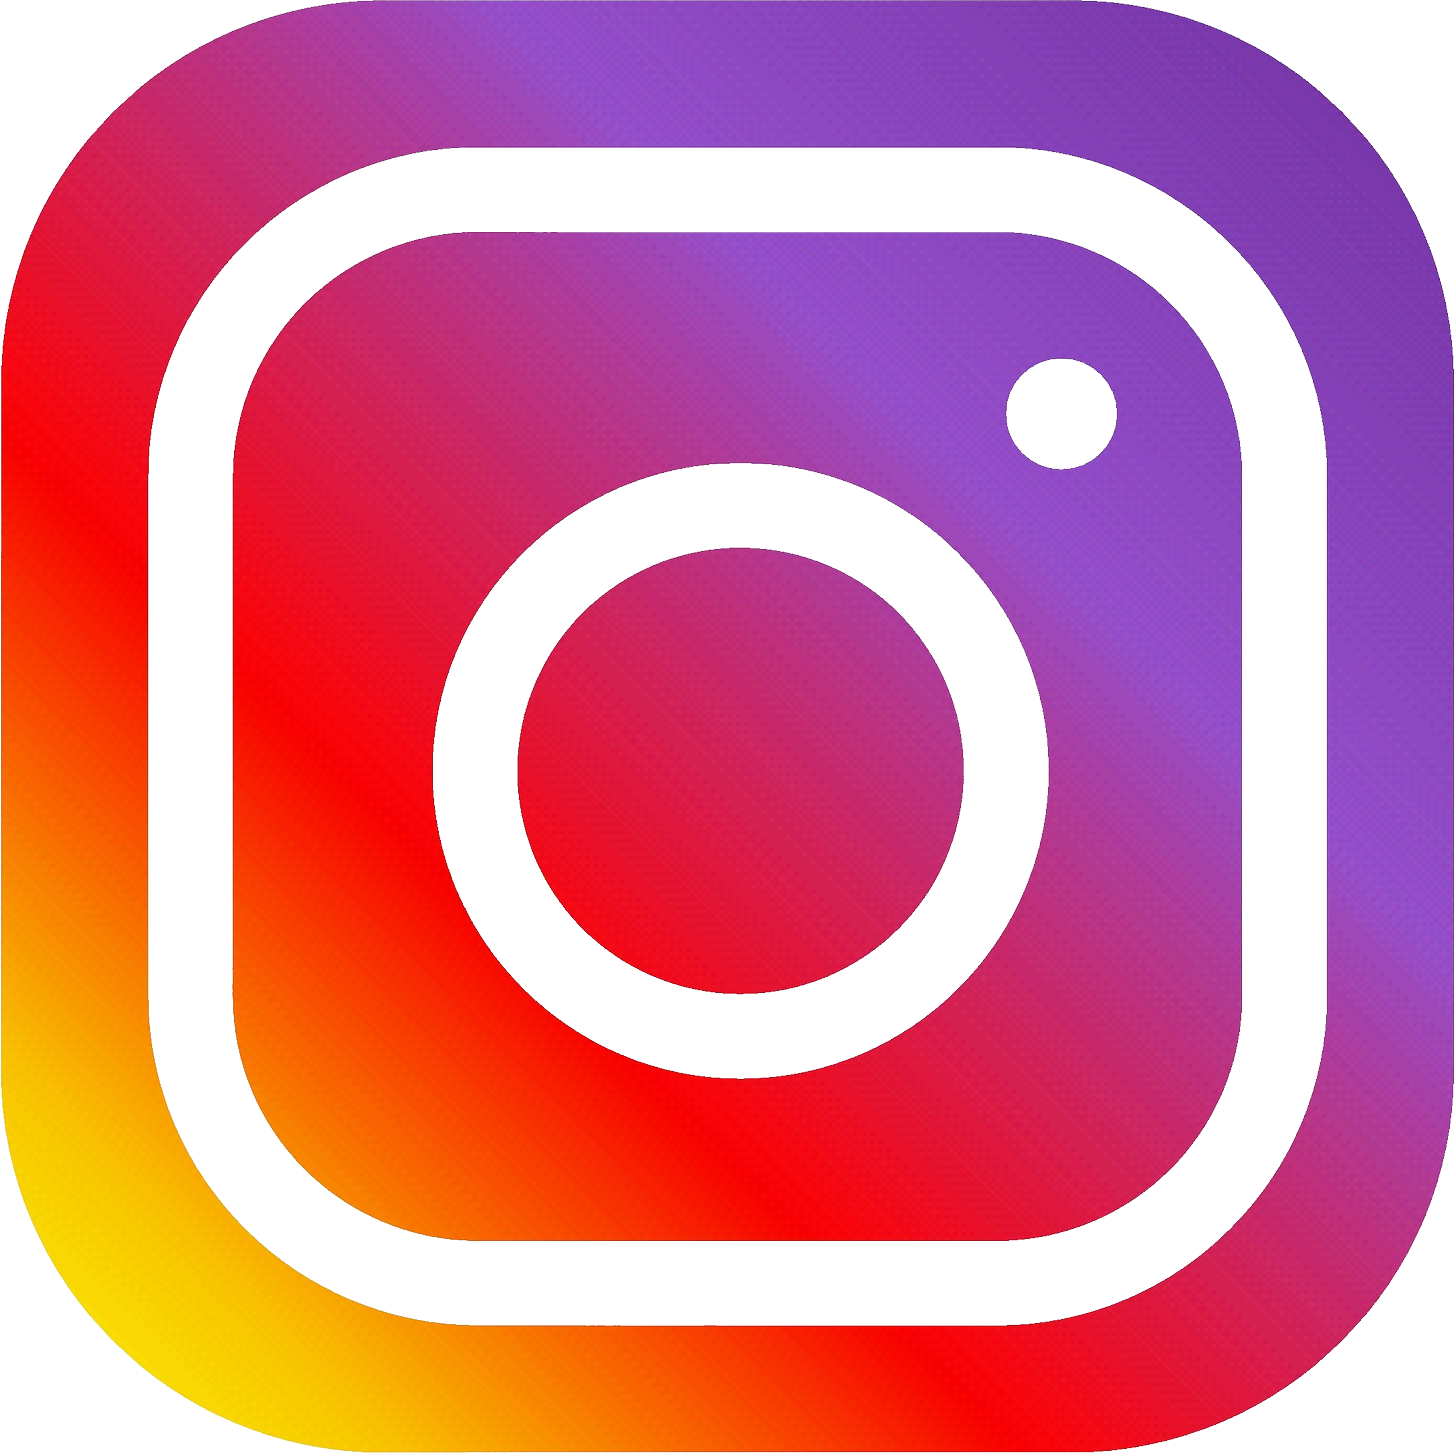 Résultat de recherche d'images pour "instagram logo png"